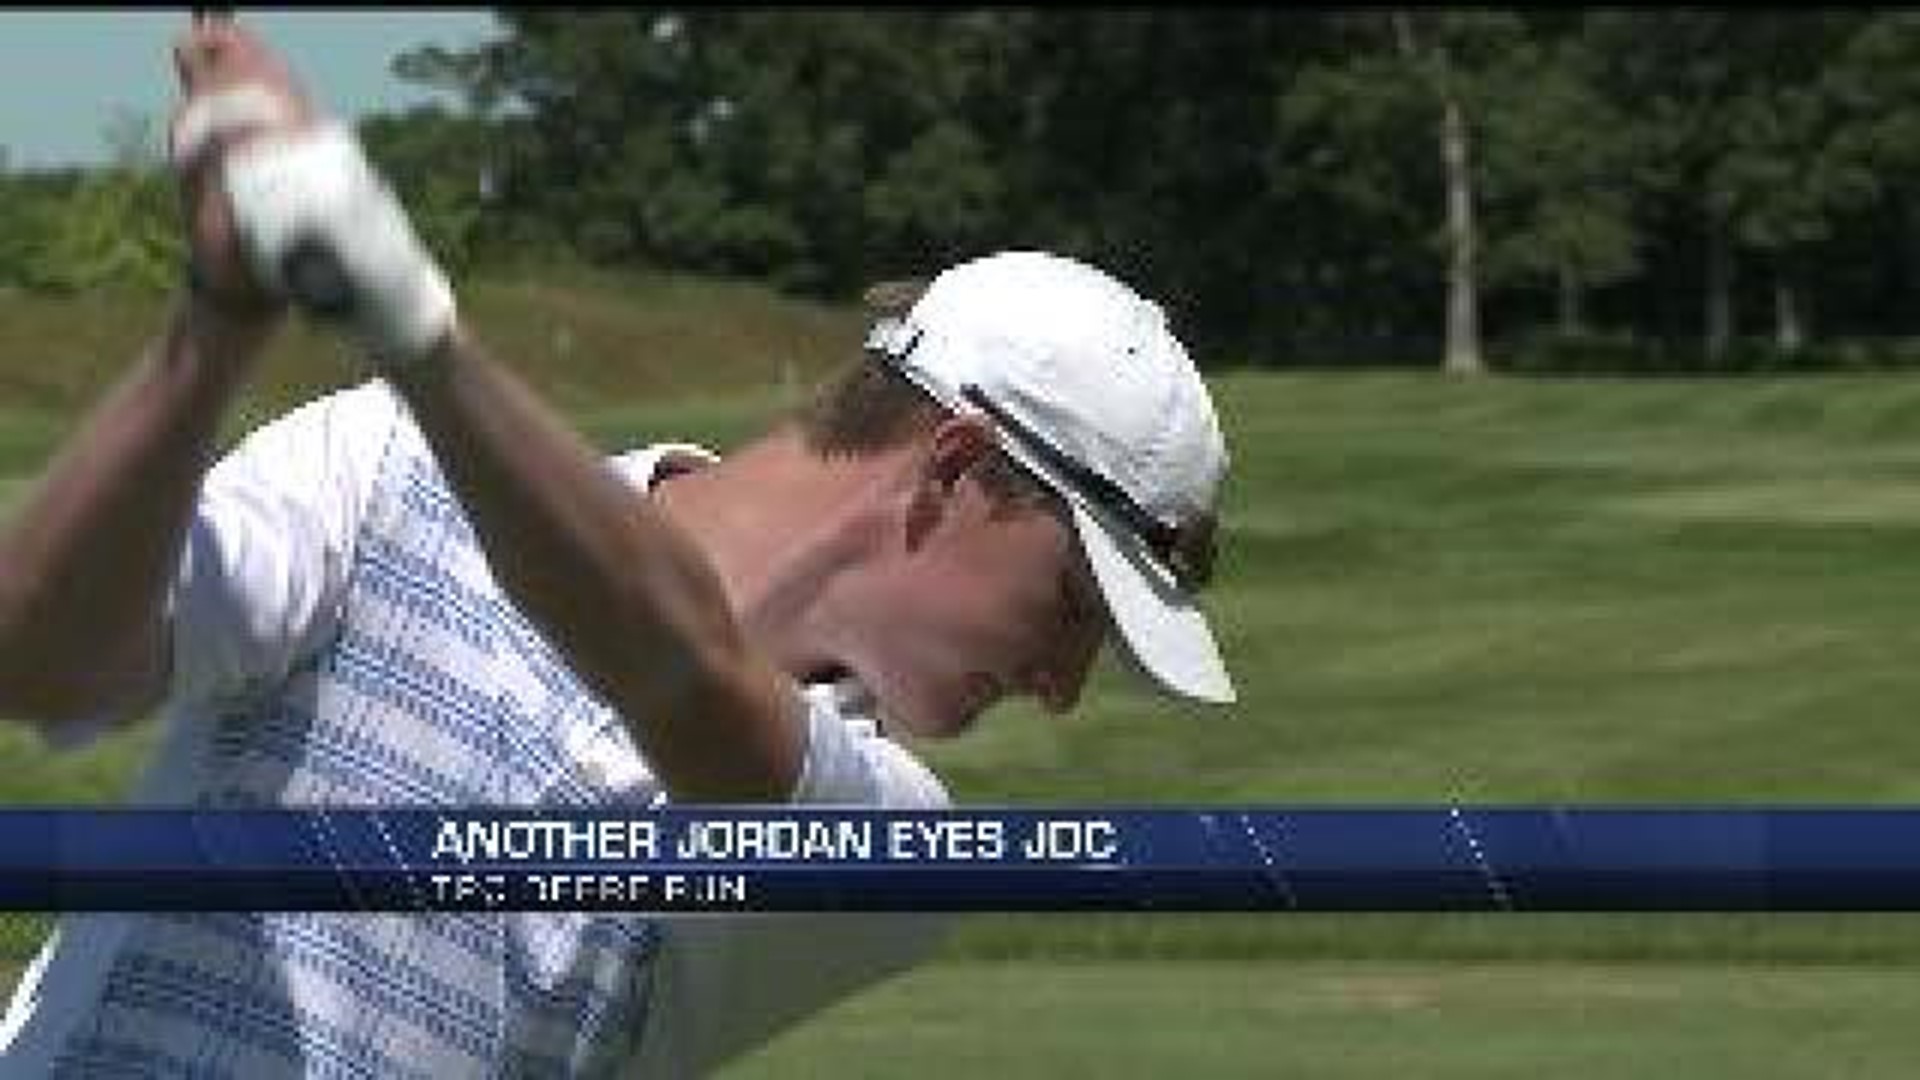 Another Jordan eyes JDC success